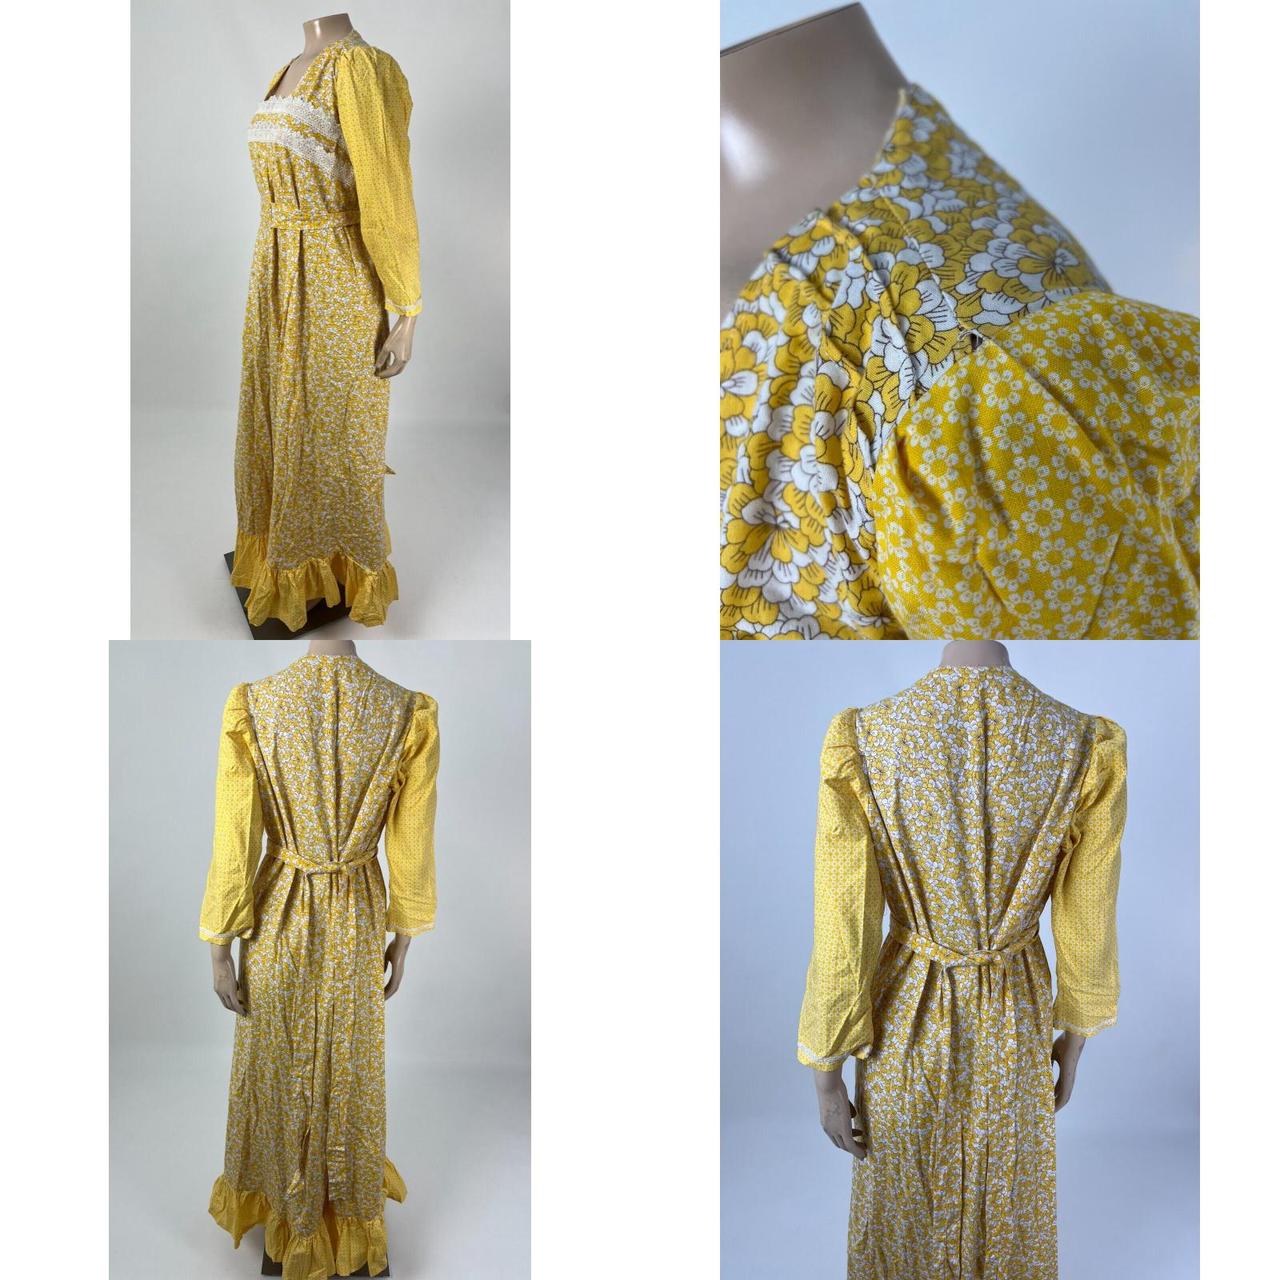 La Prairie Women's Dress (4)